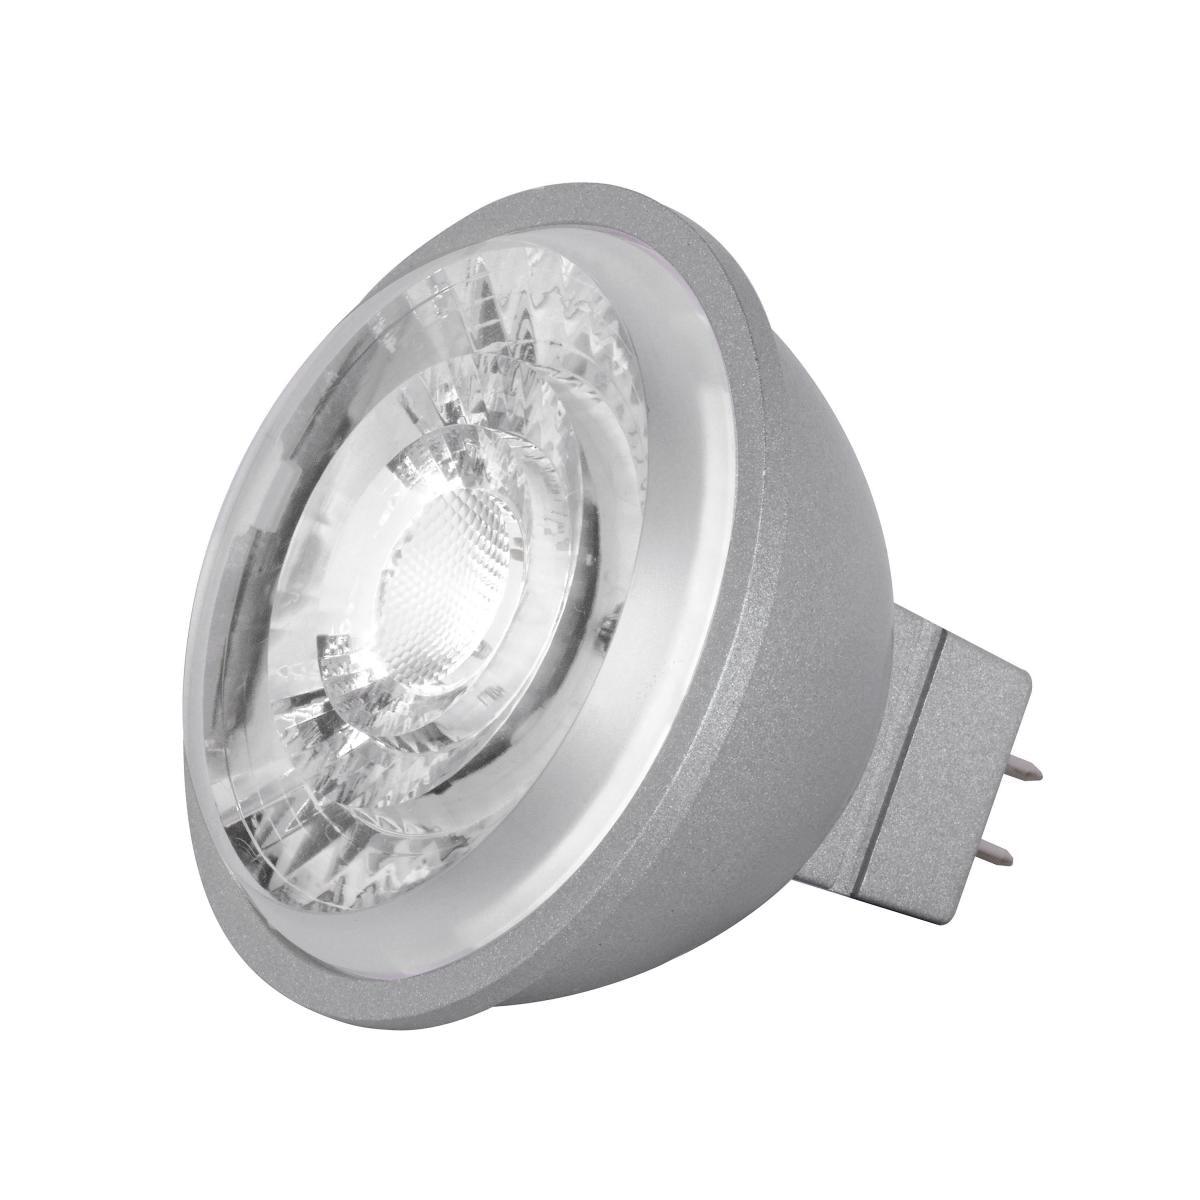 MR16 Reflector LED bulb, 8 watt, 490 Lumens, 2700K, GU5.3 Base, 15 Deg. Spot - Bees Lighting